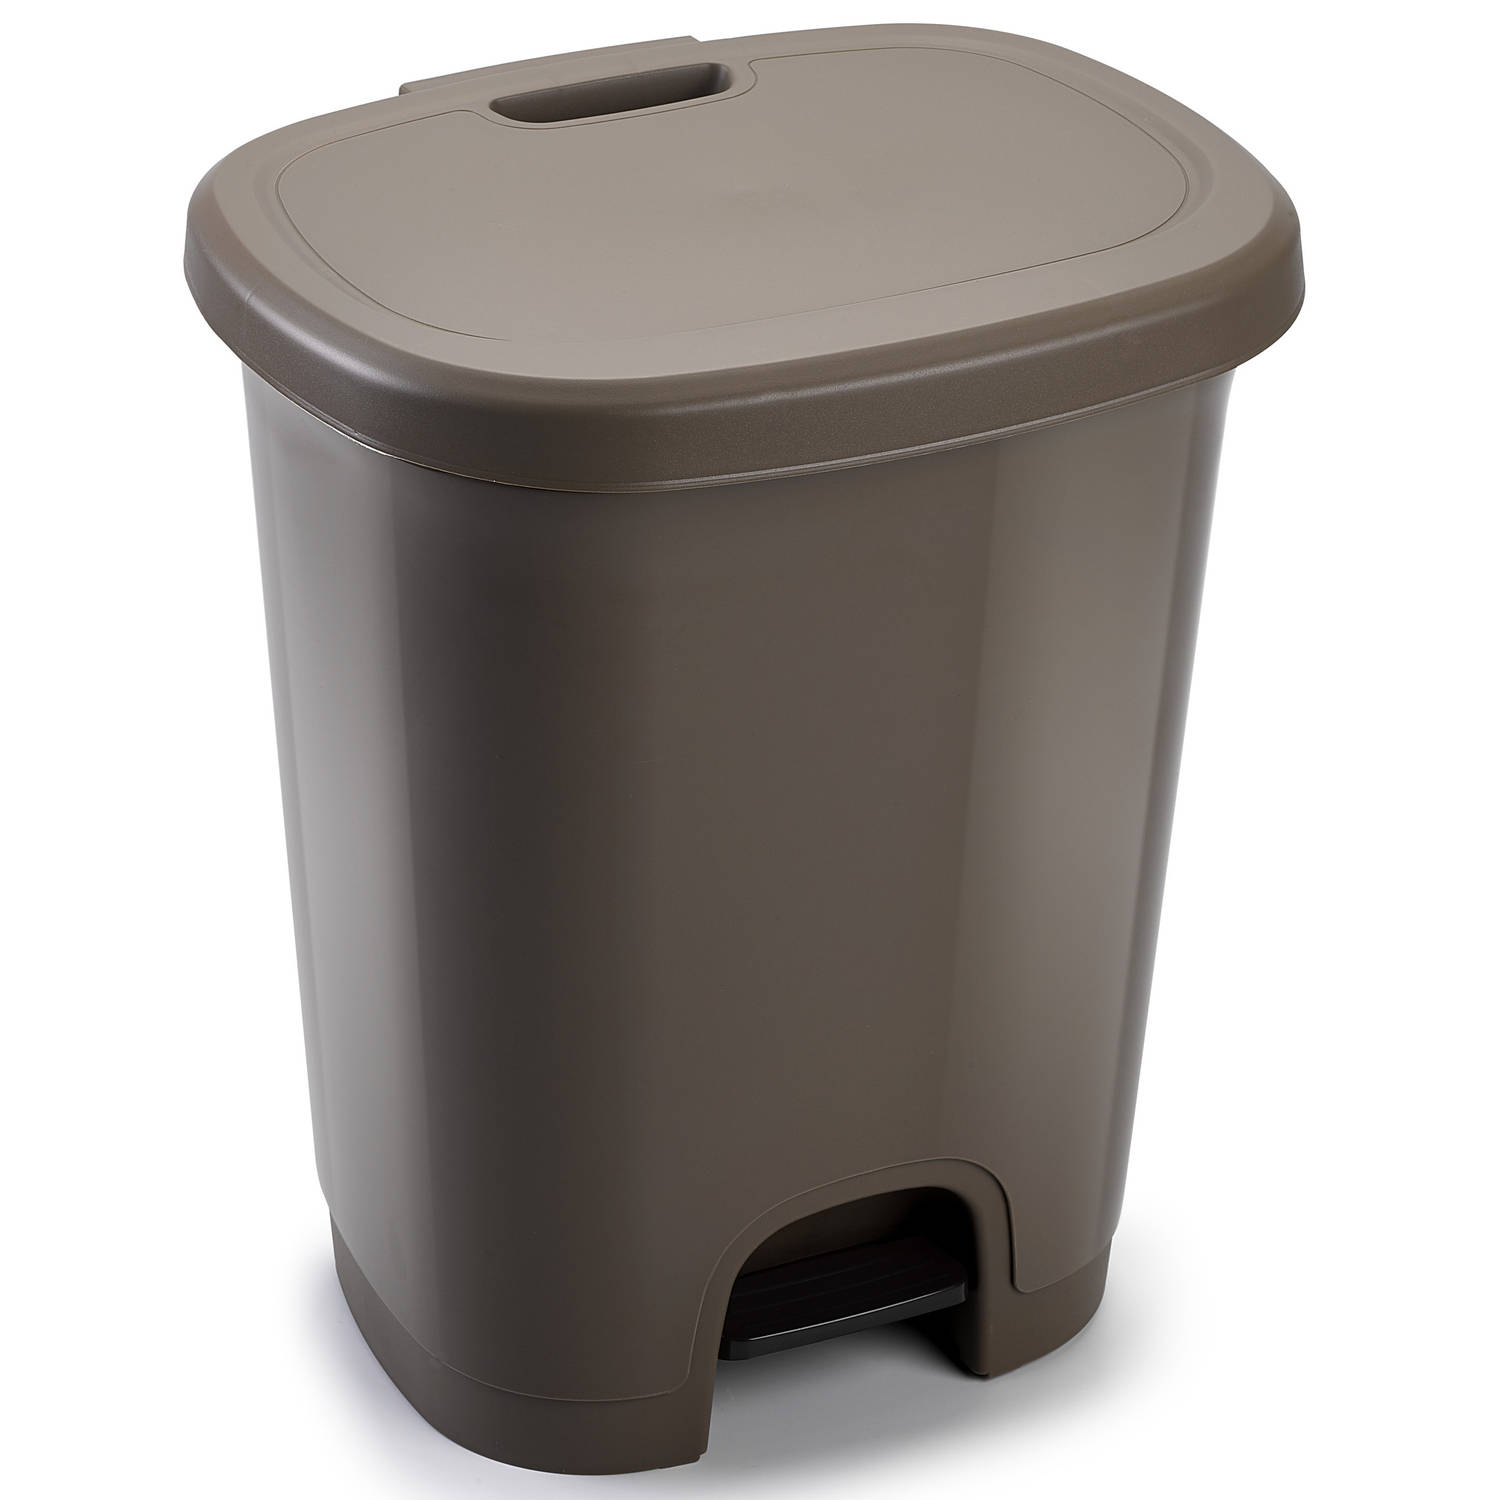 Afvalemmer/vuilnisemmer/pedaalemmer 18 liter in het taupe met deksel en pedaal - Pedaalemmers